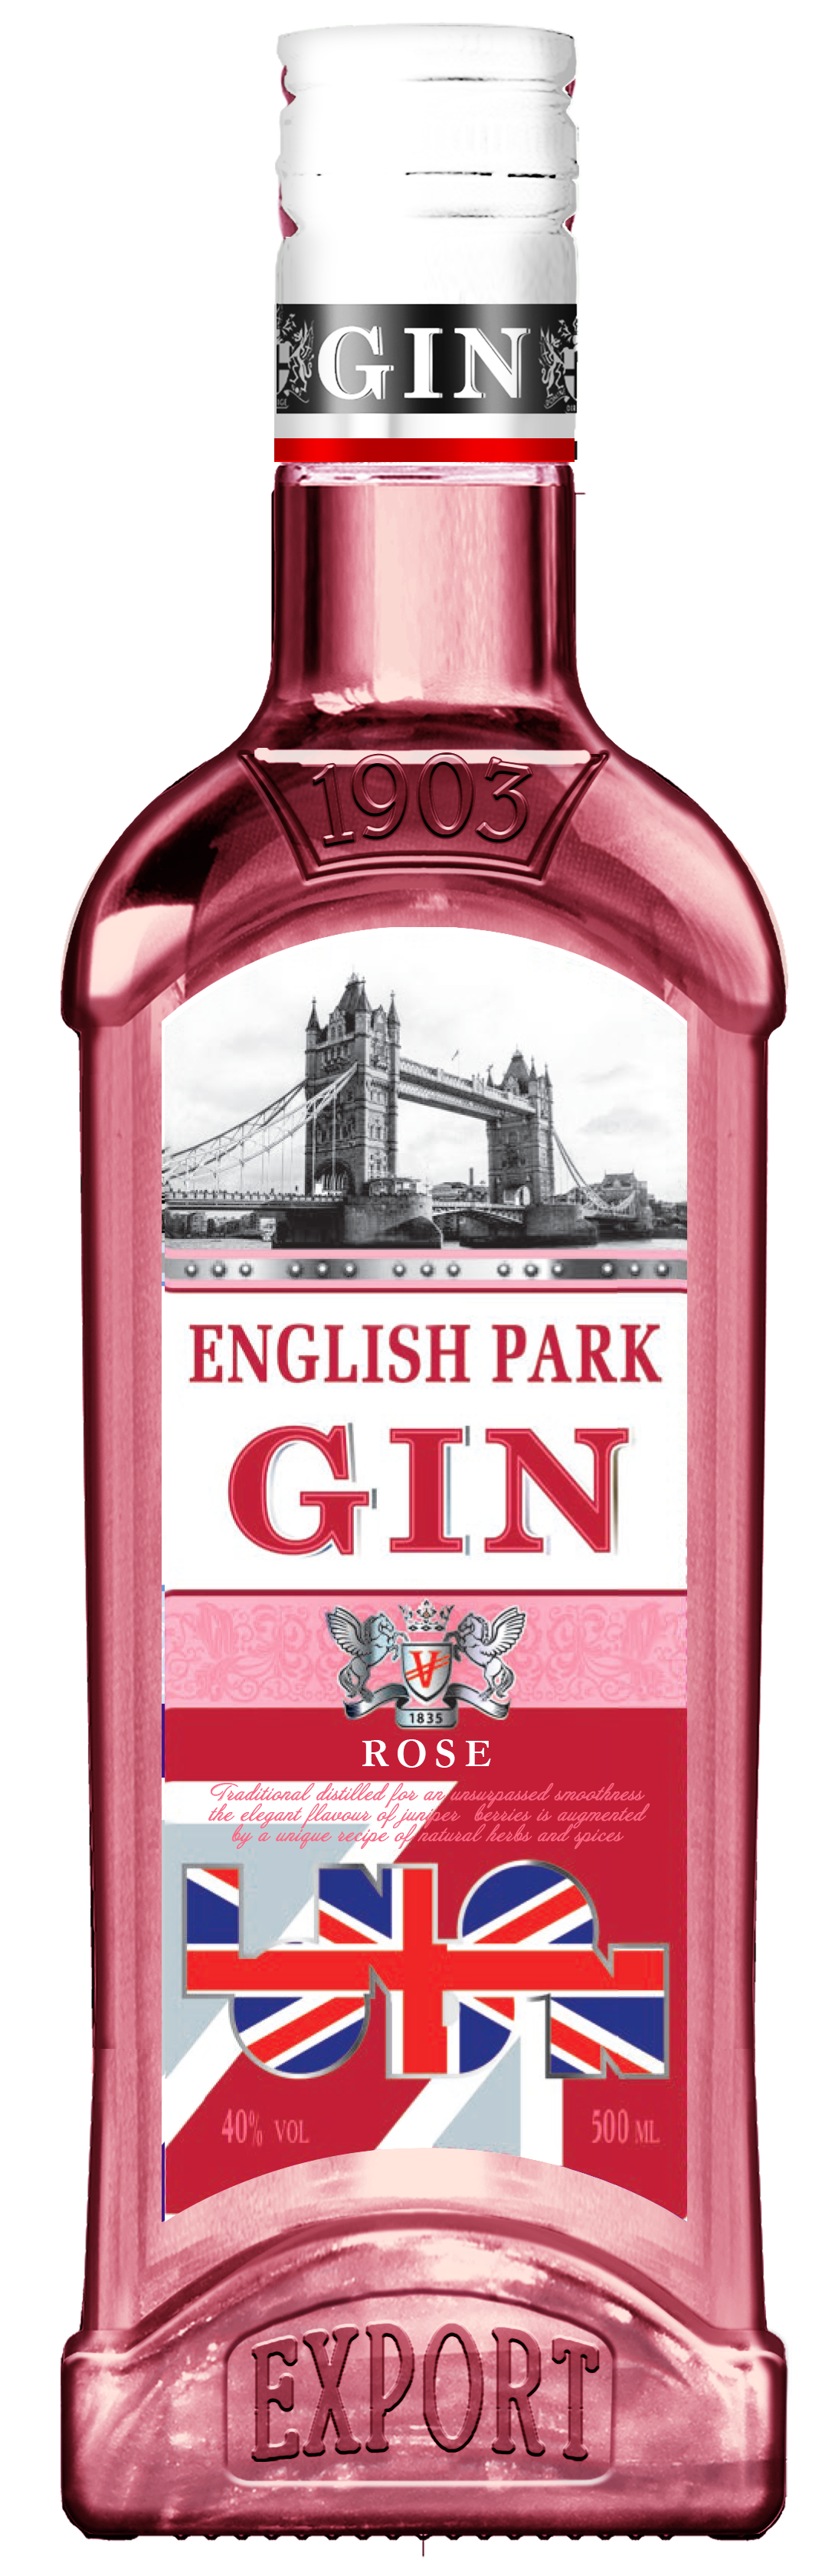 Джин инглиш. Джин English Park Premium 0.5 л. Джин English Park Premium Rose 40 0.5л. Джин "English Park" ("Инглиш парк") 0,5 л 40%. Джин English Park Rose, 0.5 л.